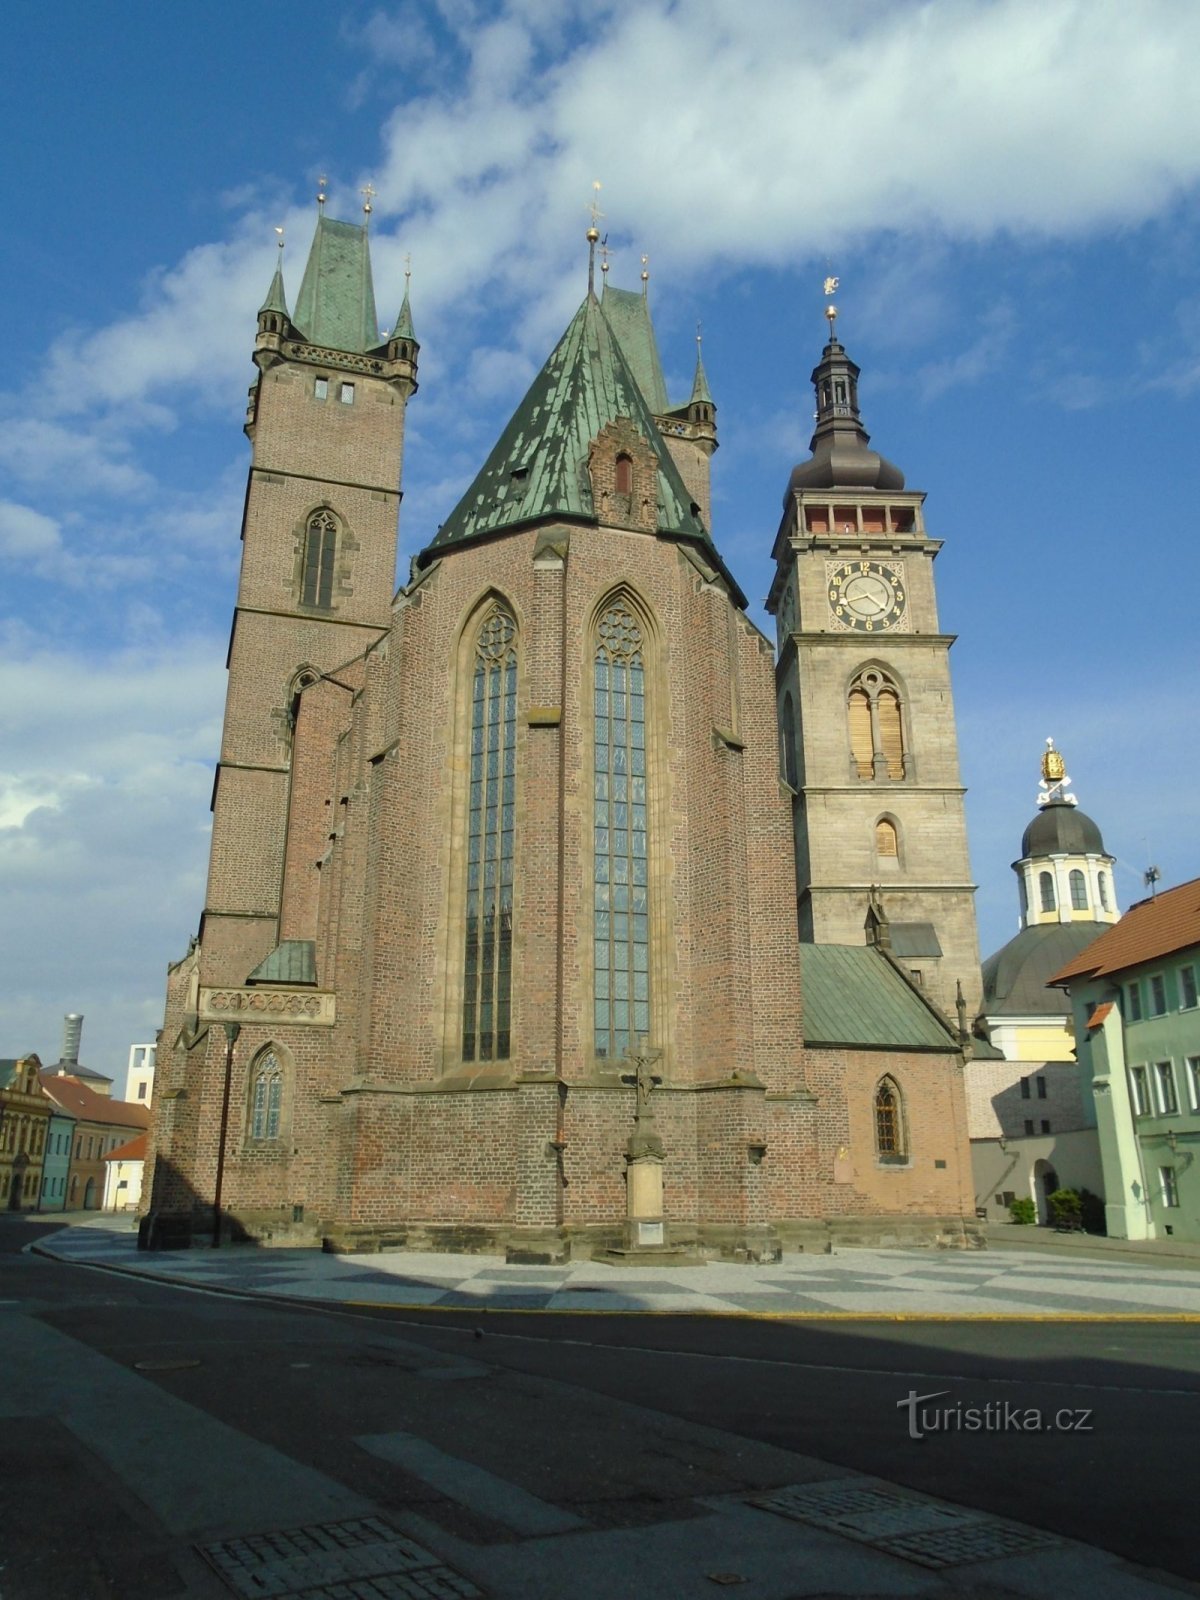 Καθεδρικός Ναός Αγ. Spirit with the White Tower (Hradec Králové, 1.5.2019/XNUMX/XNUMX)